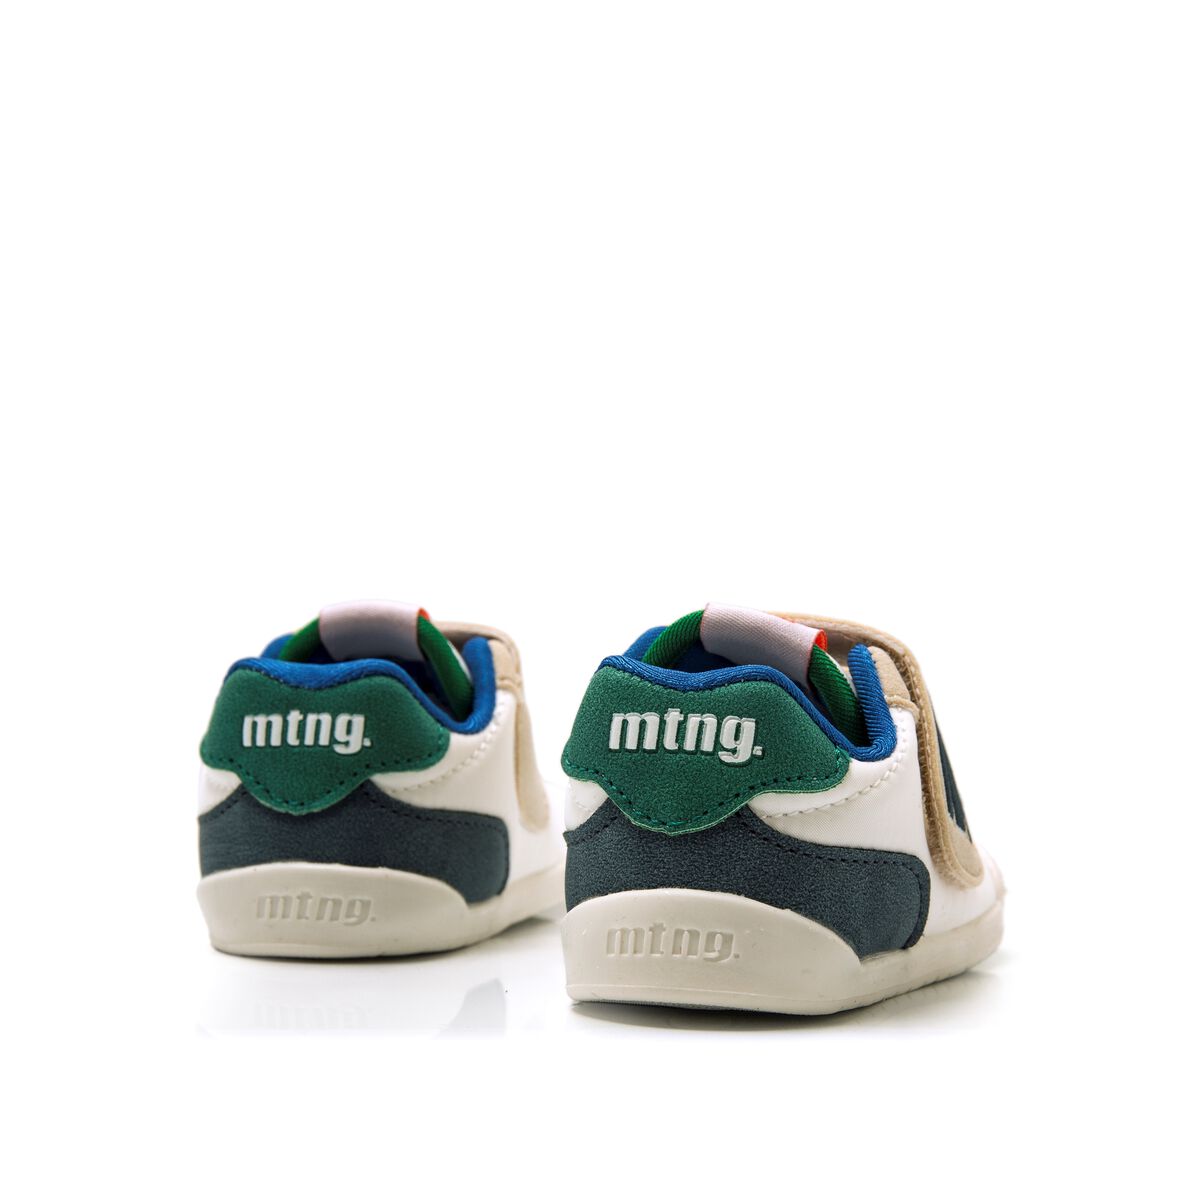 Zapatillas de Nino modelo FREE BABY de MTNG image number 3